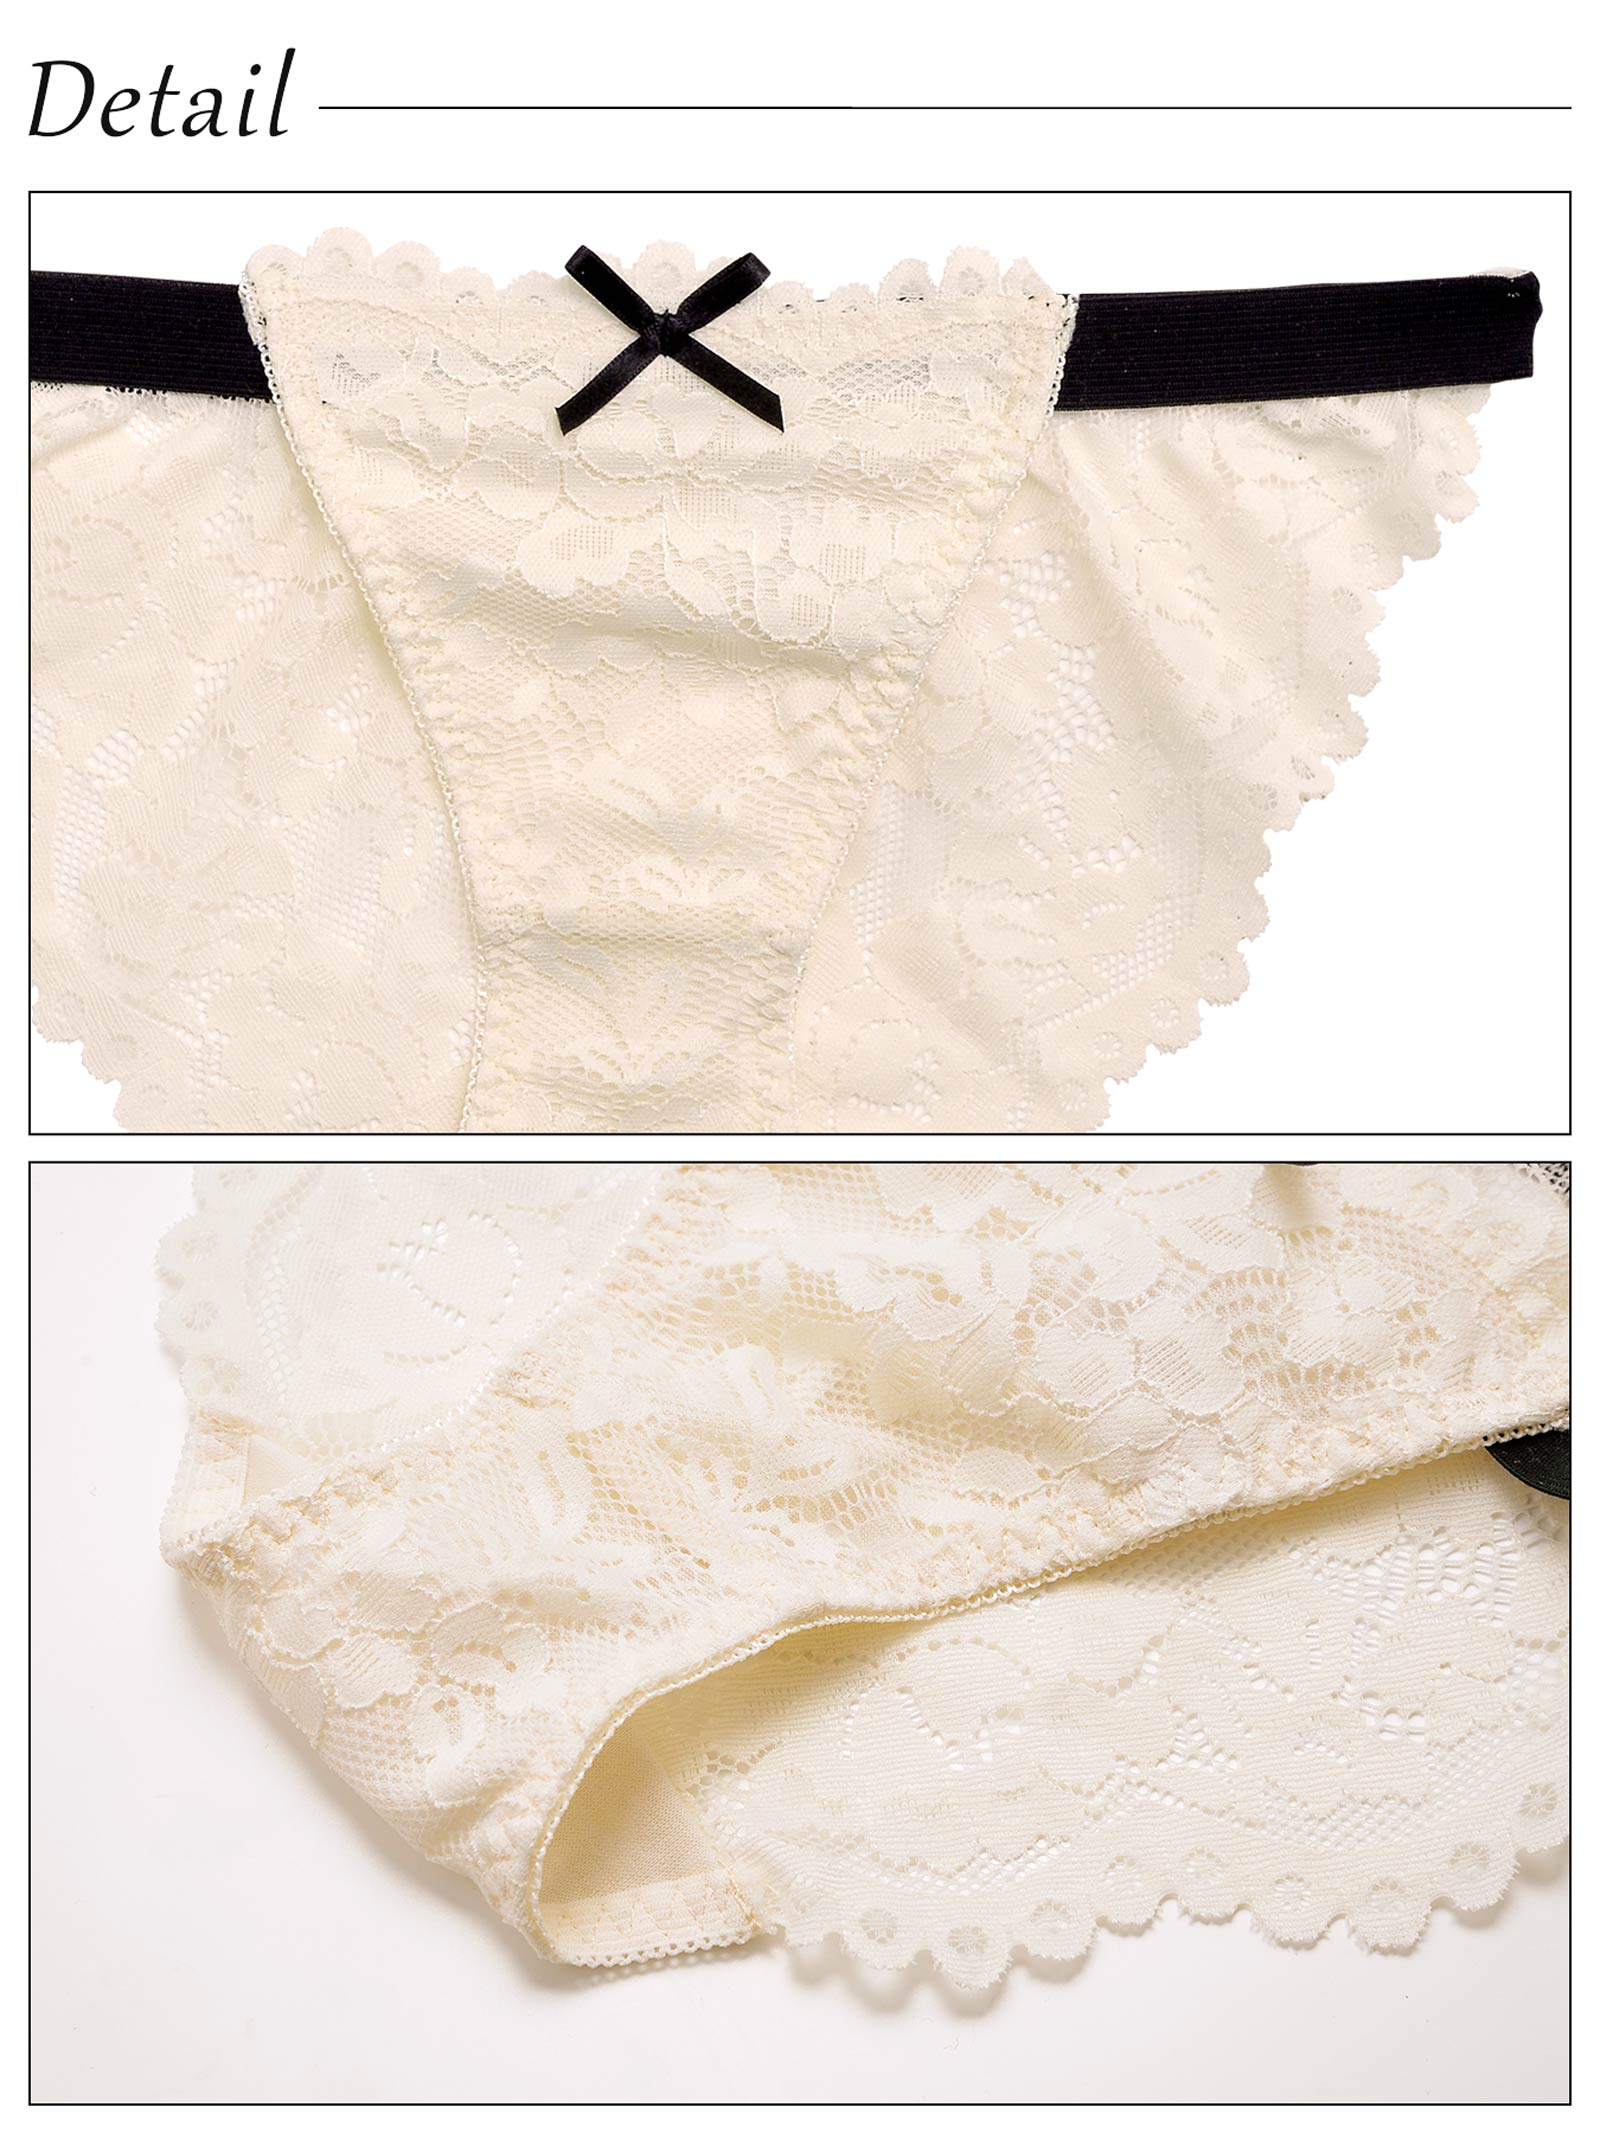 3/30新作!【Lunangelina】Nude Ribbon Lace Bra&shorts